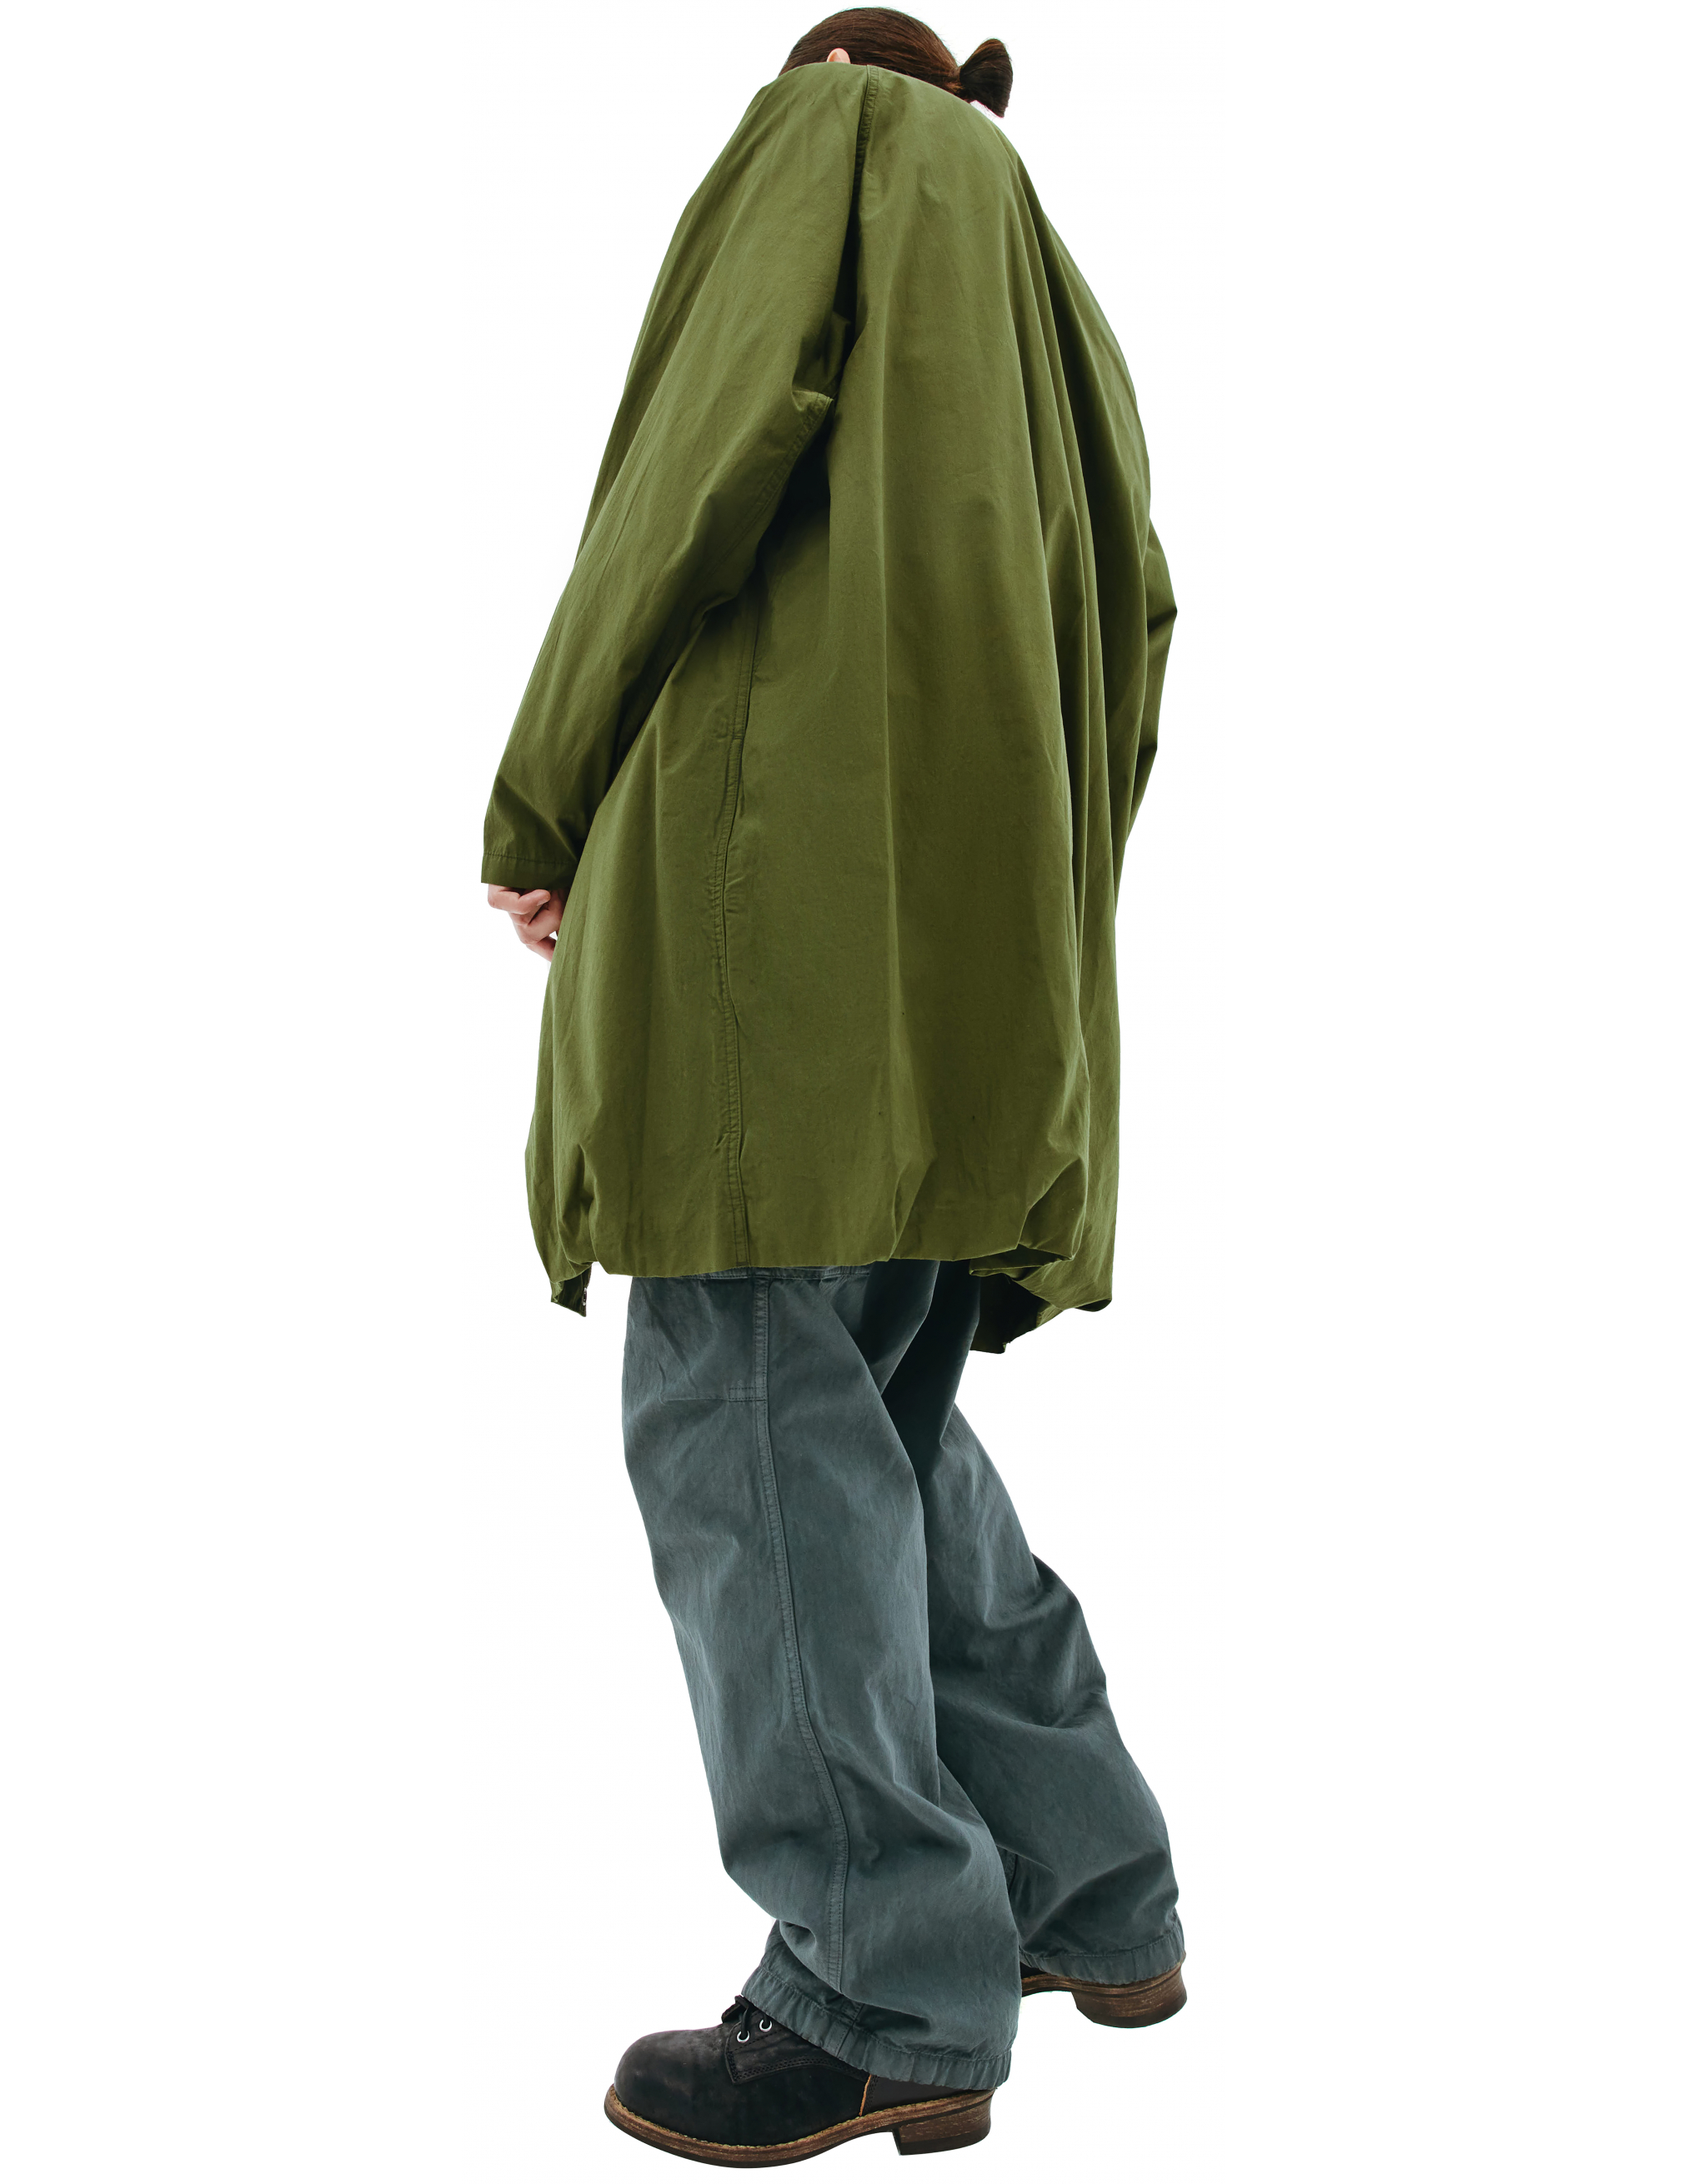 Пальто из хлопка с накладным карманом - Visvim 0121205013027/olive Фото 2